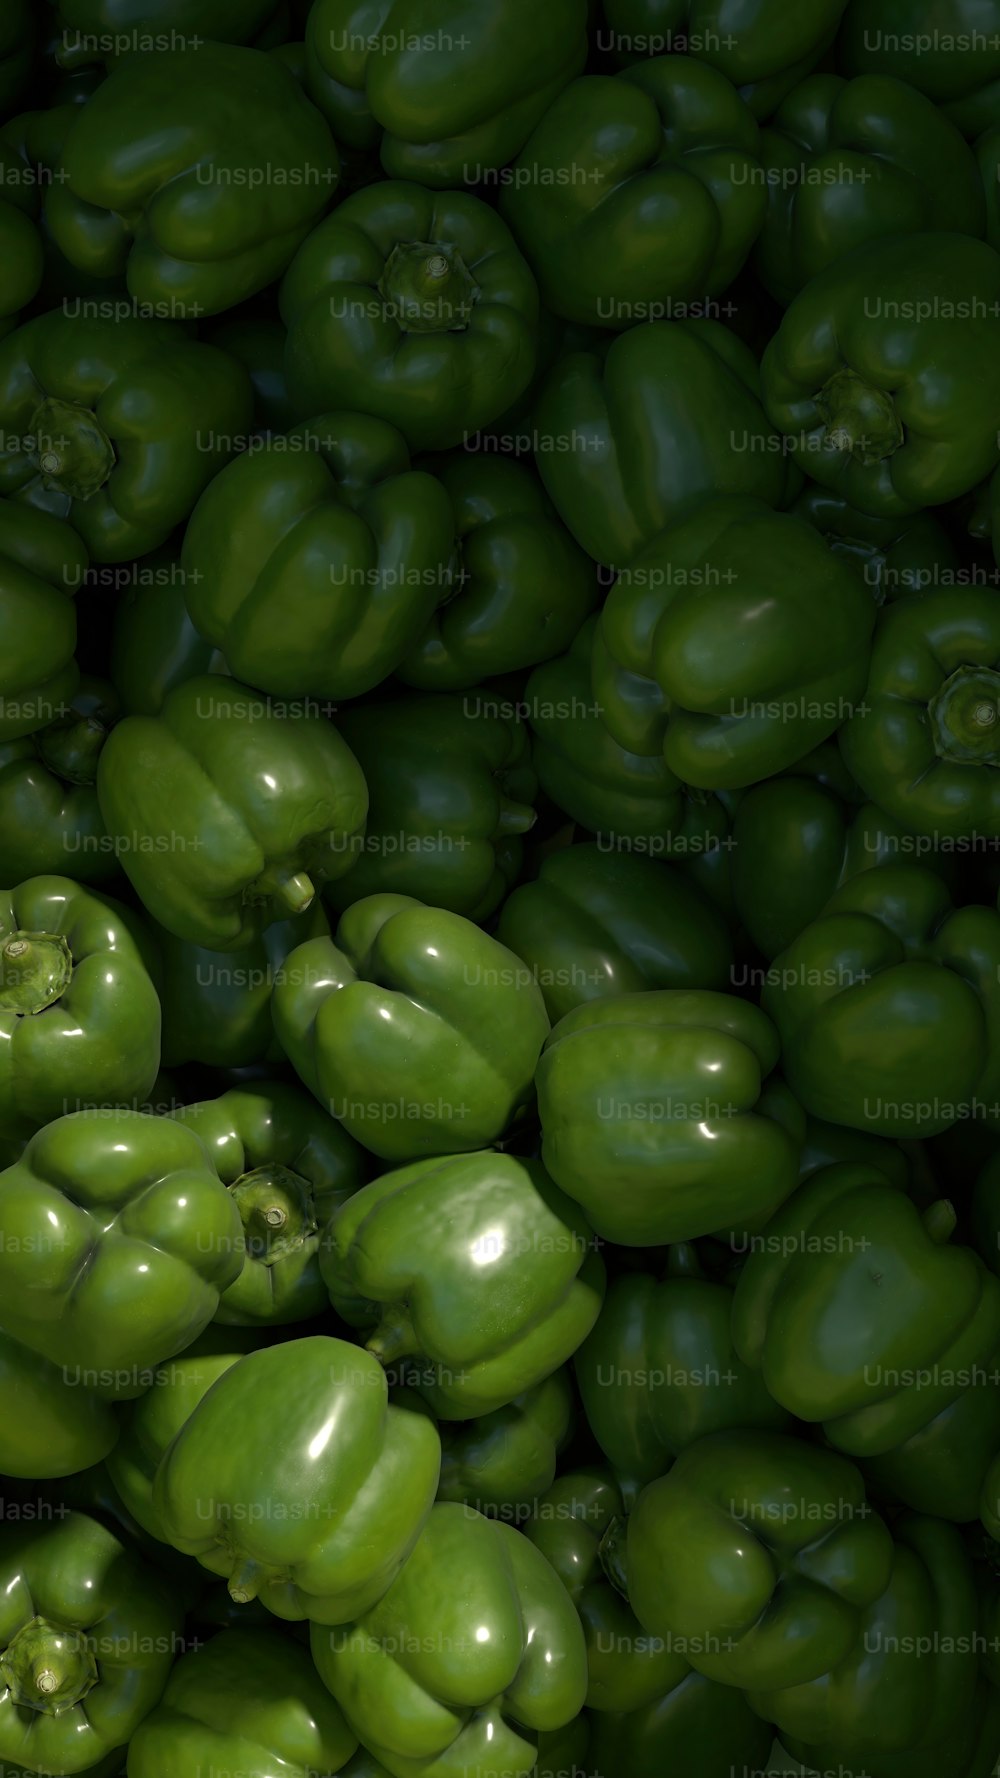 Un grande mucchio di peperoni verdi accatastati uno sopra l'altro